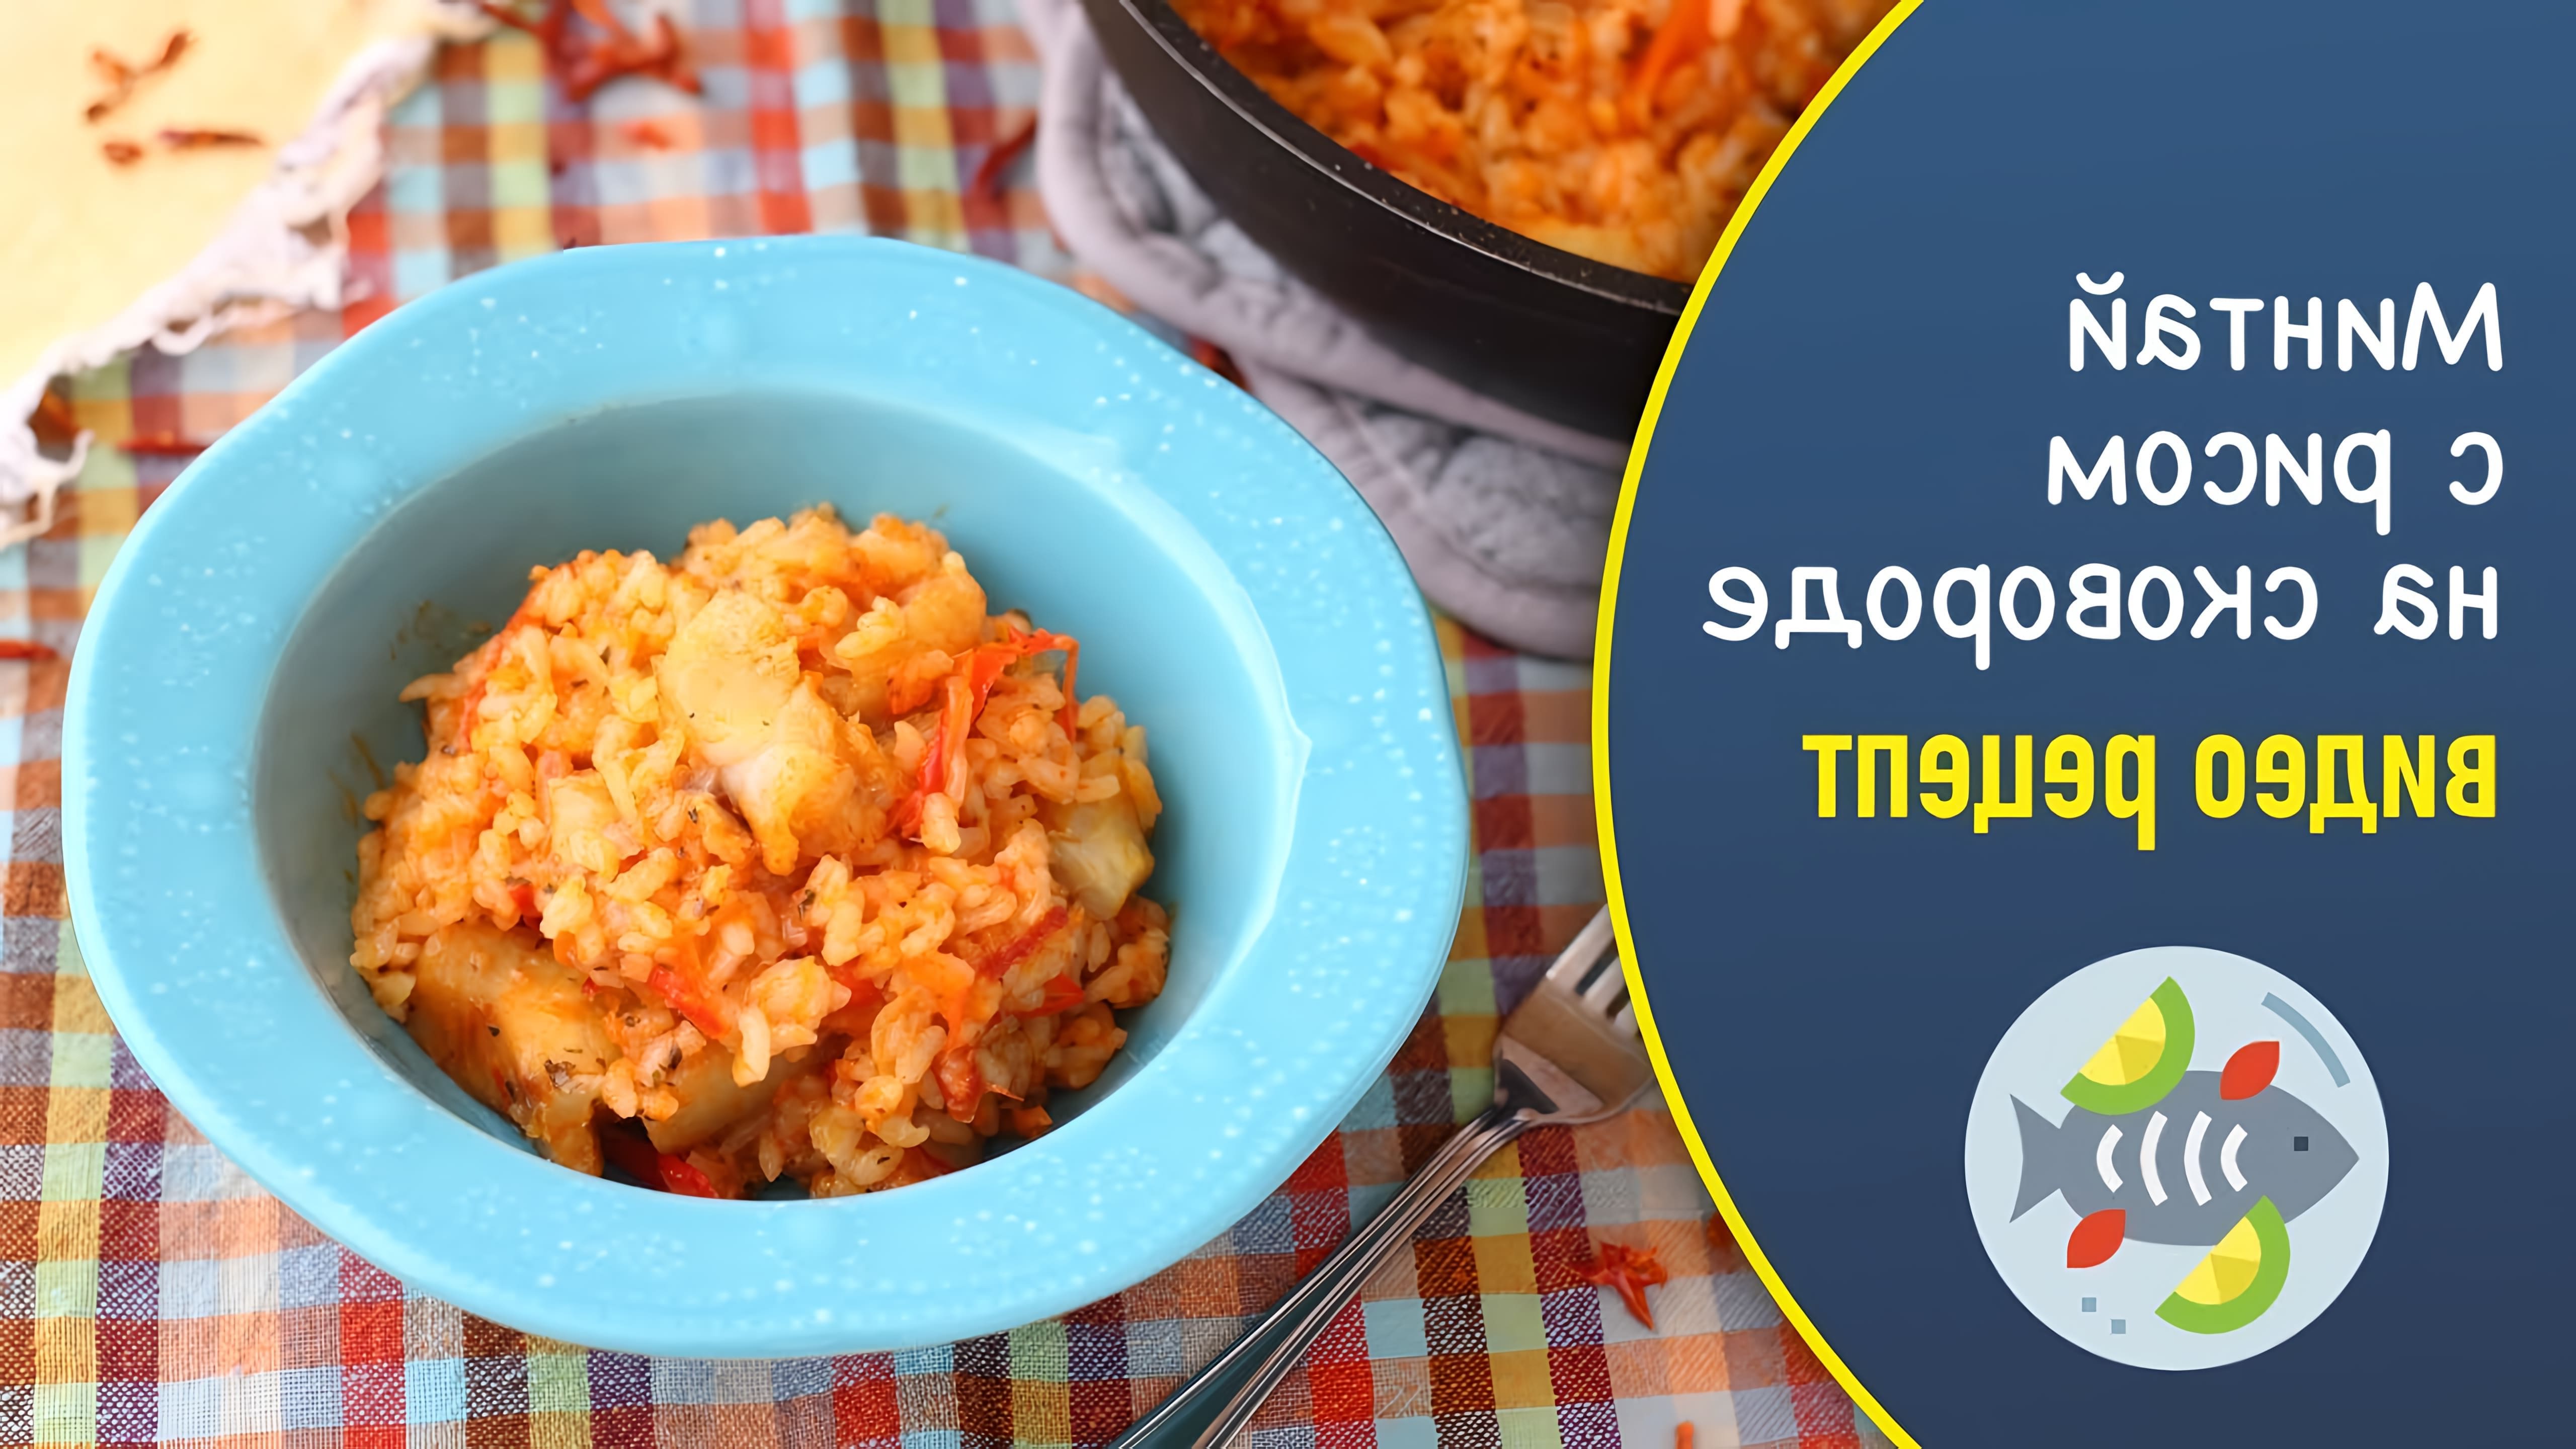 Минтай с рисом на сковороде - это простой и вкусный рецепт, который можно приготовить в домашних условиях